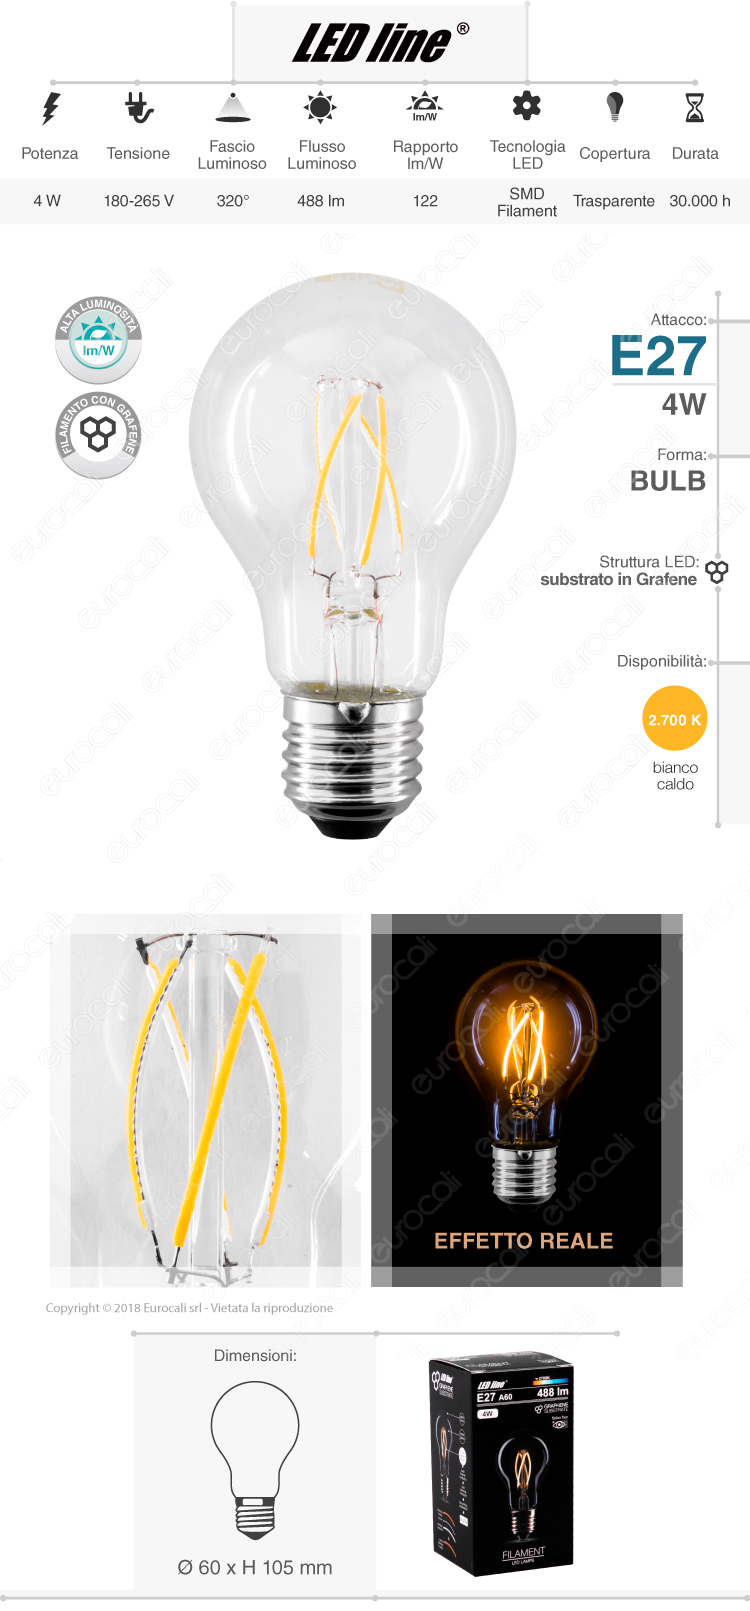 Led Line lampadina LED E27